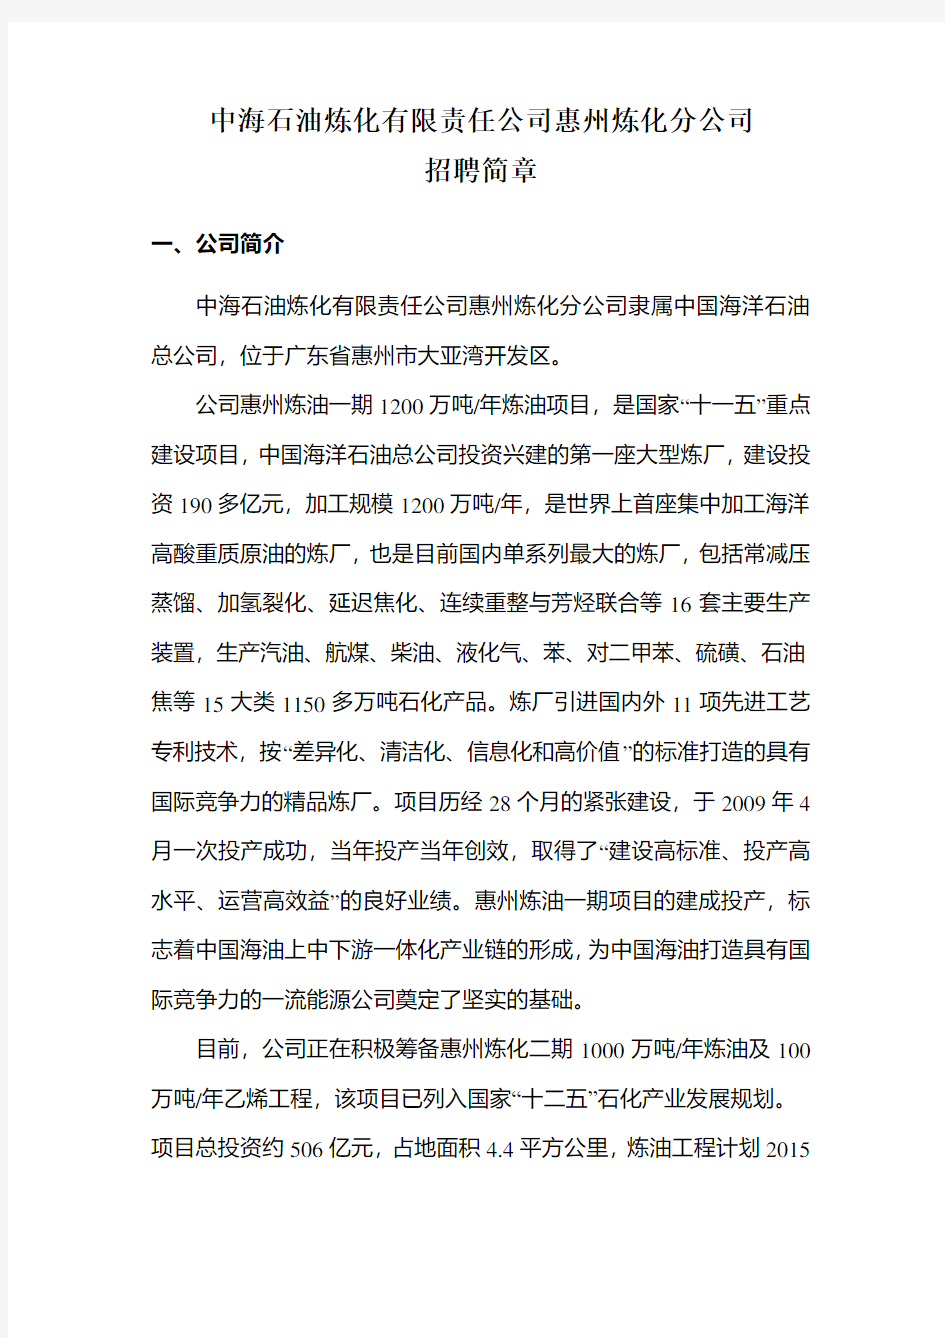 中海石油炼化有限责任公司惠州炼化分公司 招聘简章